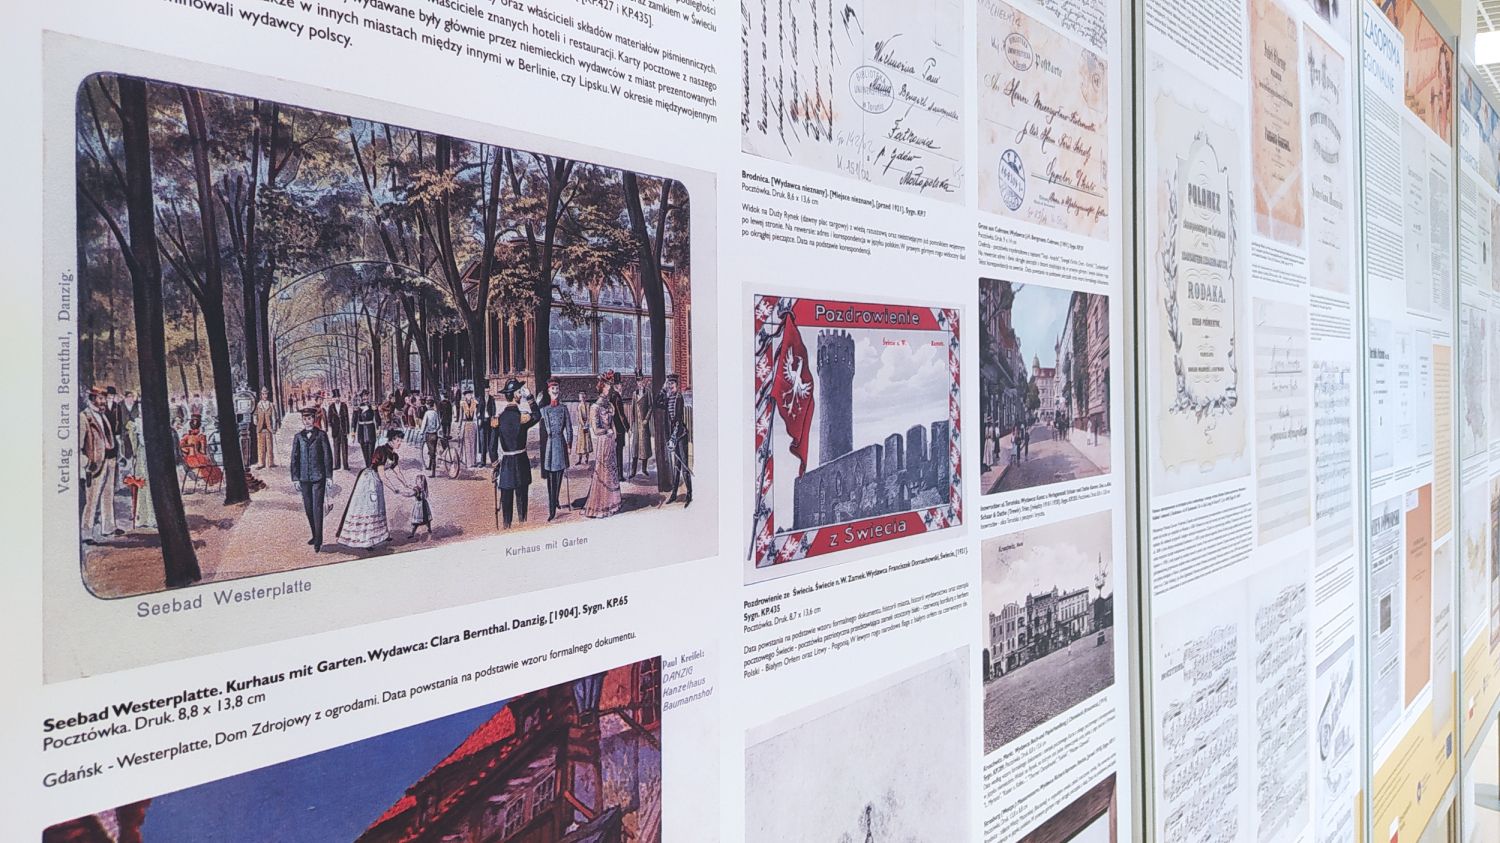 Stojące, kolorowe plansze dużego formatu, będące elementami wystawy prezentującej zasoby zdigitalizowane i opublikowane w Kujawsko-Pomorskiej Bibliotece Cyfrowej.